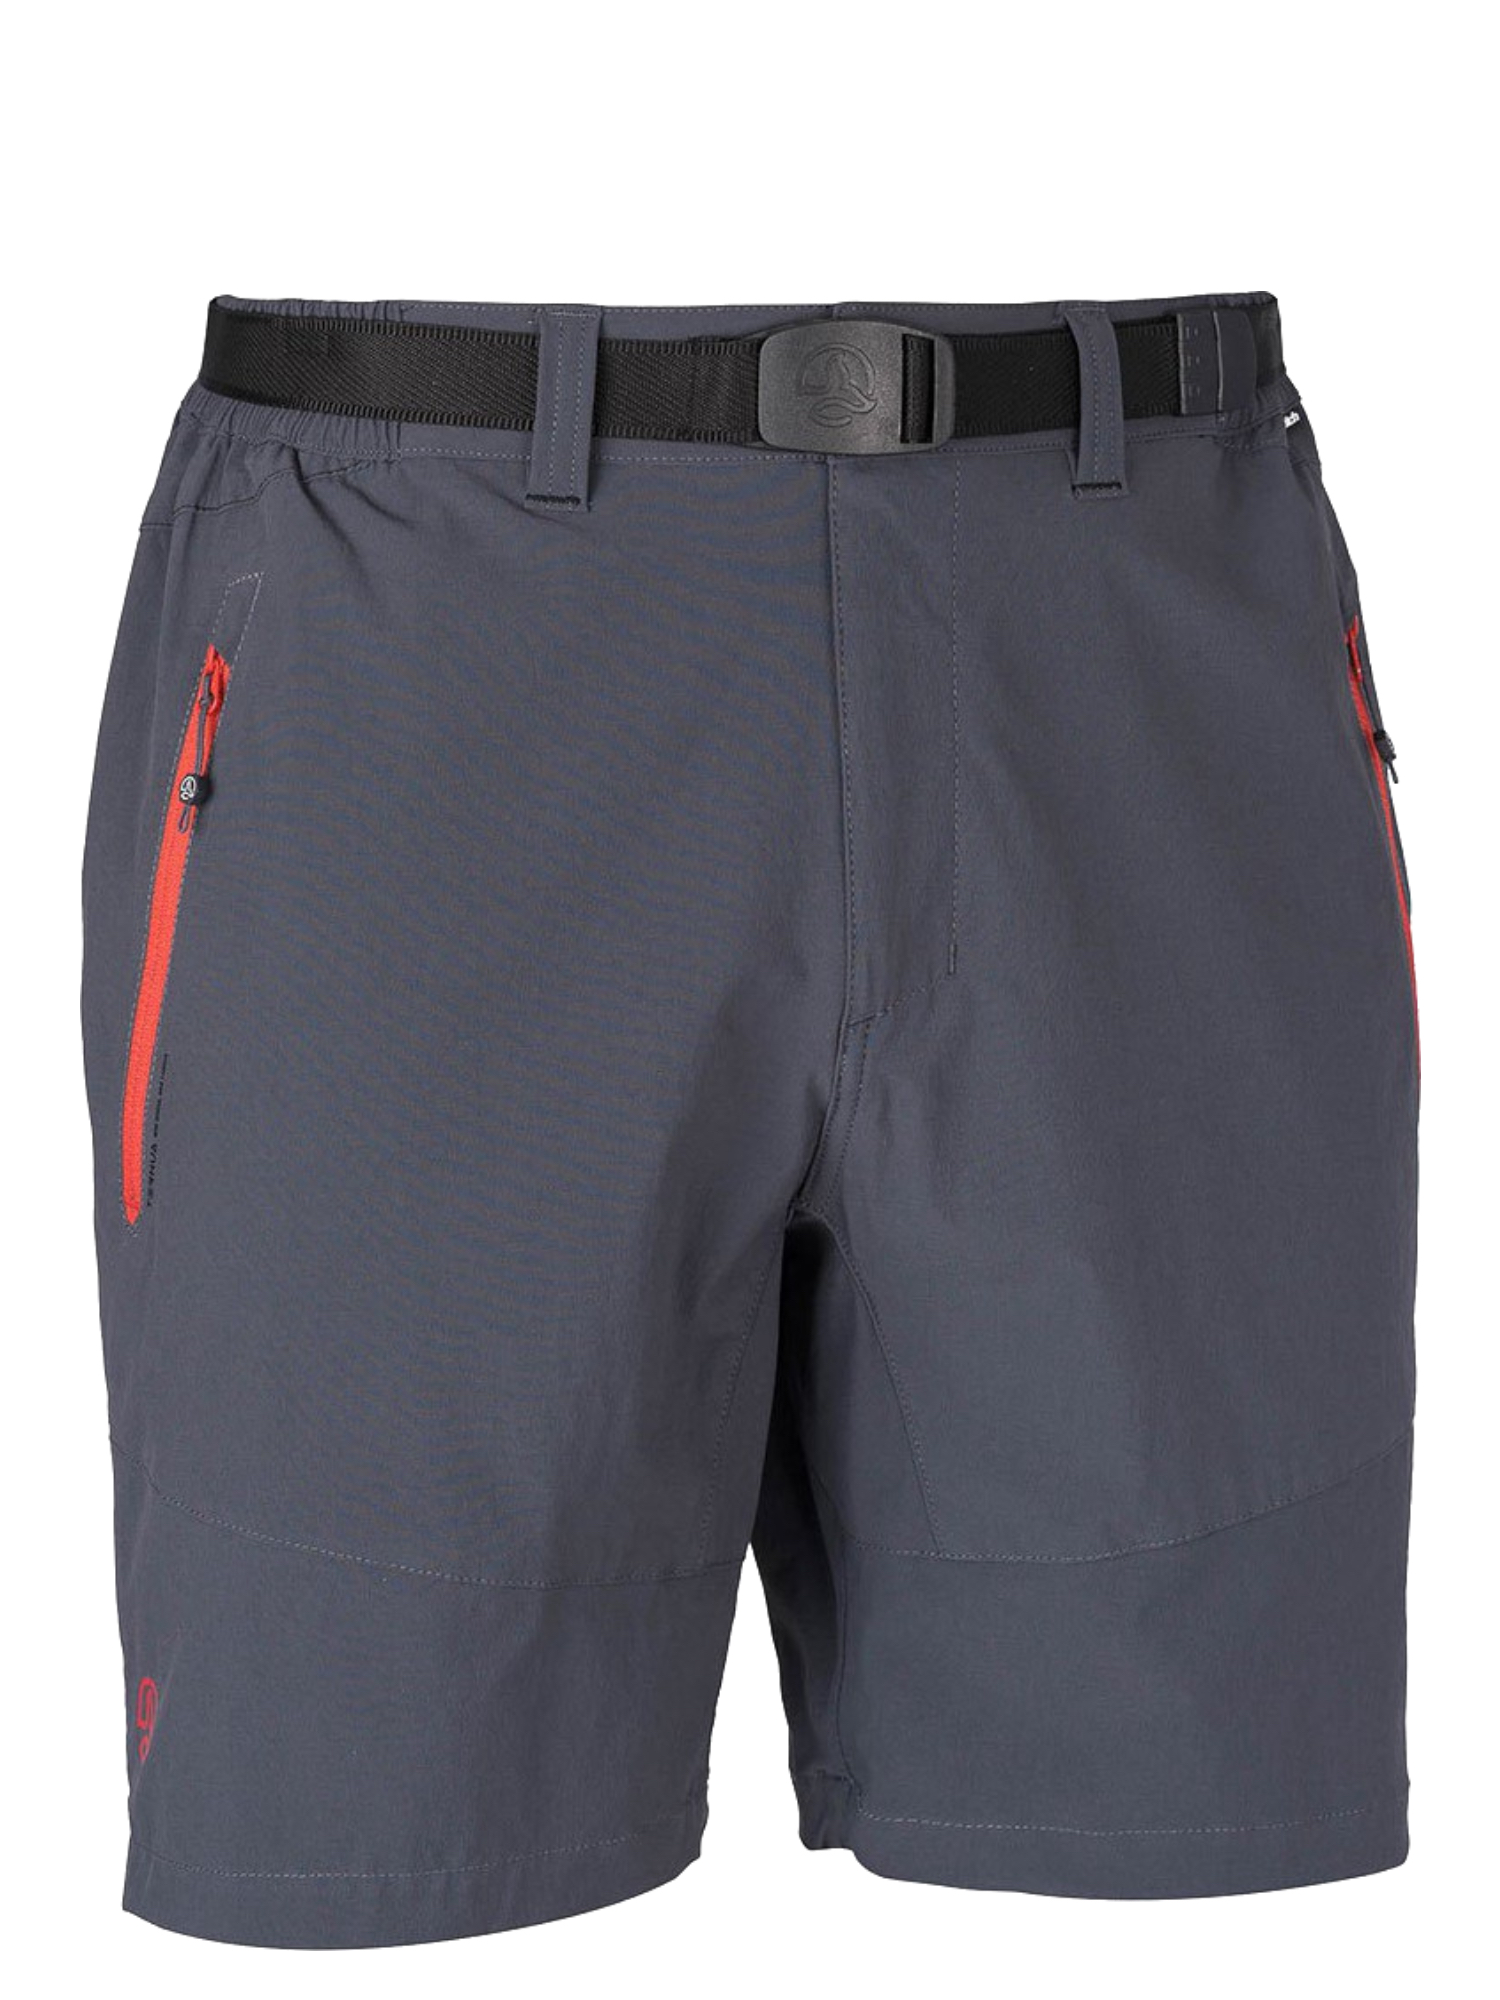 Спортивные шорты мужские Ternua Friz Sht M серые 2XL